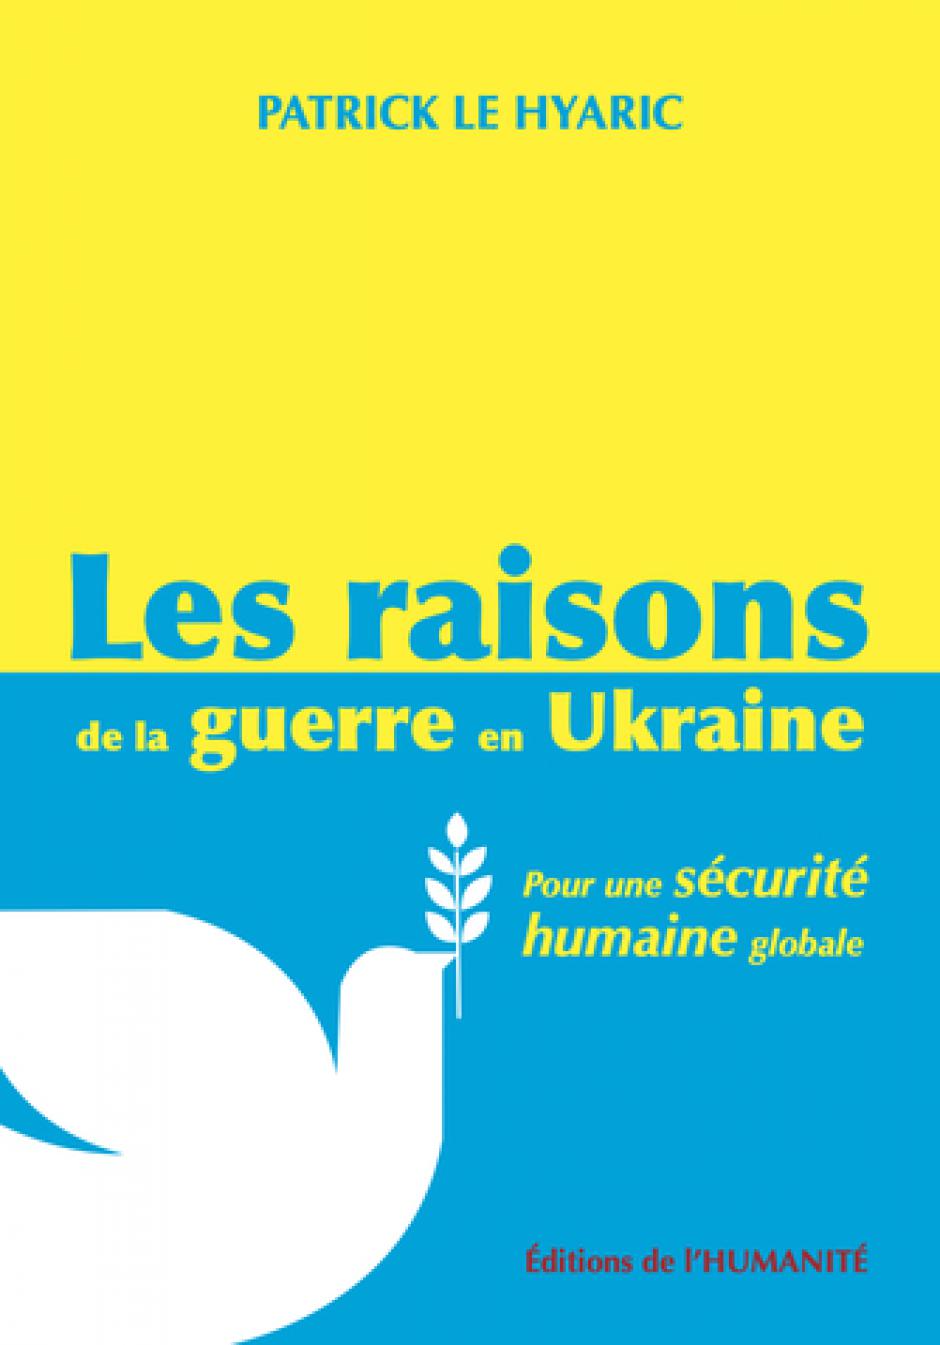 Les raisons de la guerre en Ukraine. Pour une sécurité humaine globale - Livre de Patrick Le Hyaric, septembre 2022